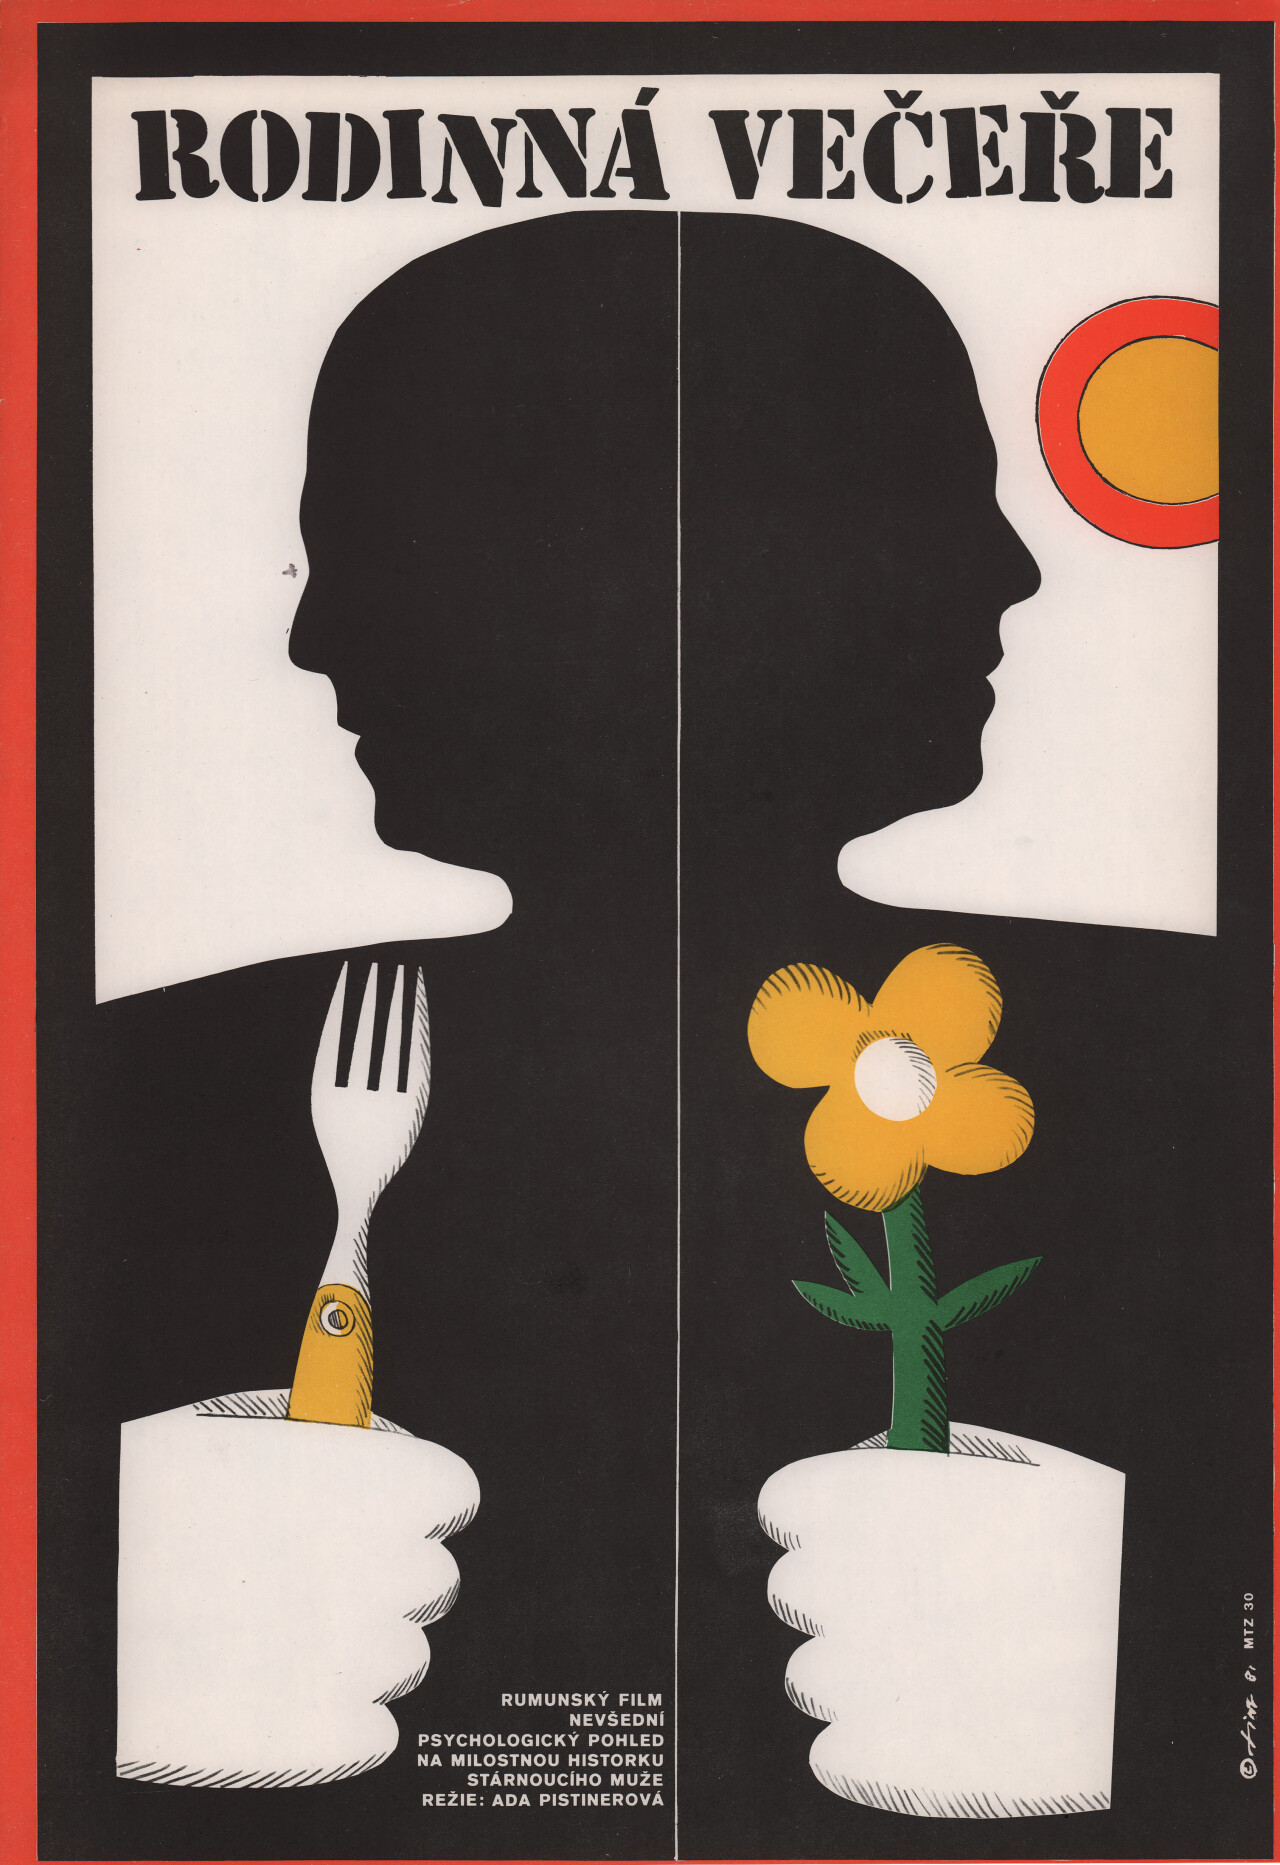 Снимок за семейным столом (Snapshot Around the Family Table, 1982), режиссёр Ада Пистинер, минималистичный постер к фильму (Чехословакия, 1982 год), автор Ярослав Физер